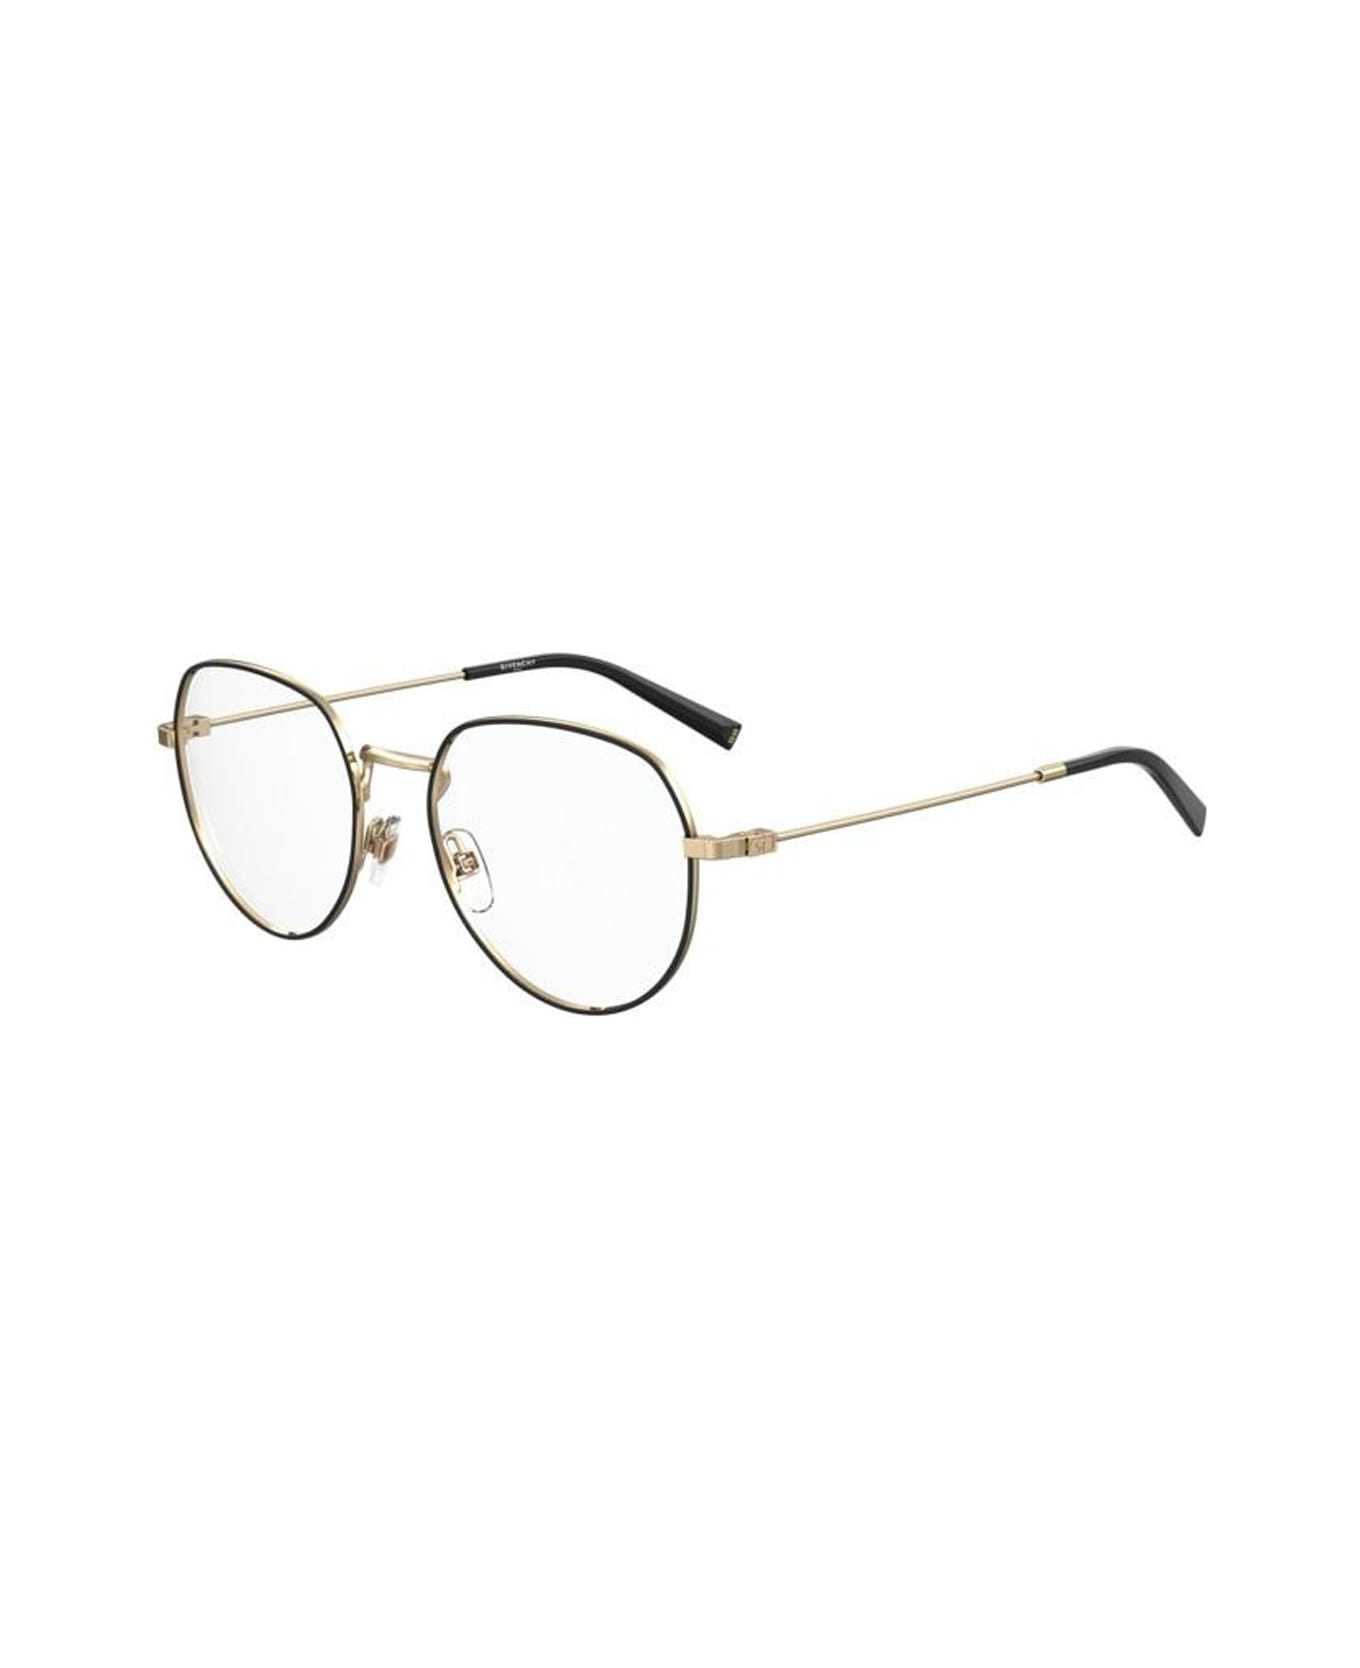 Givenchy Eyewear Gv 0139 Glasses - Oro